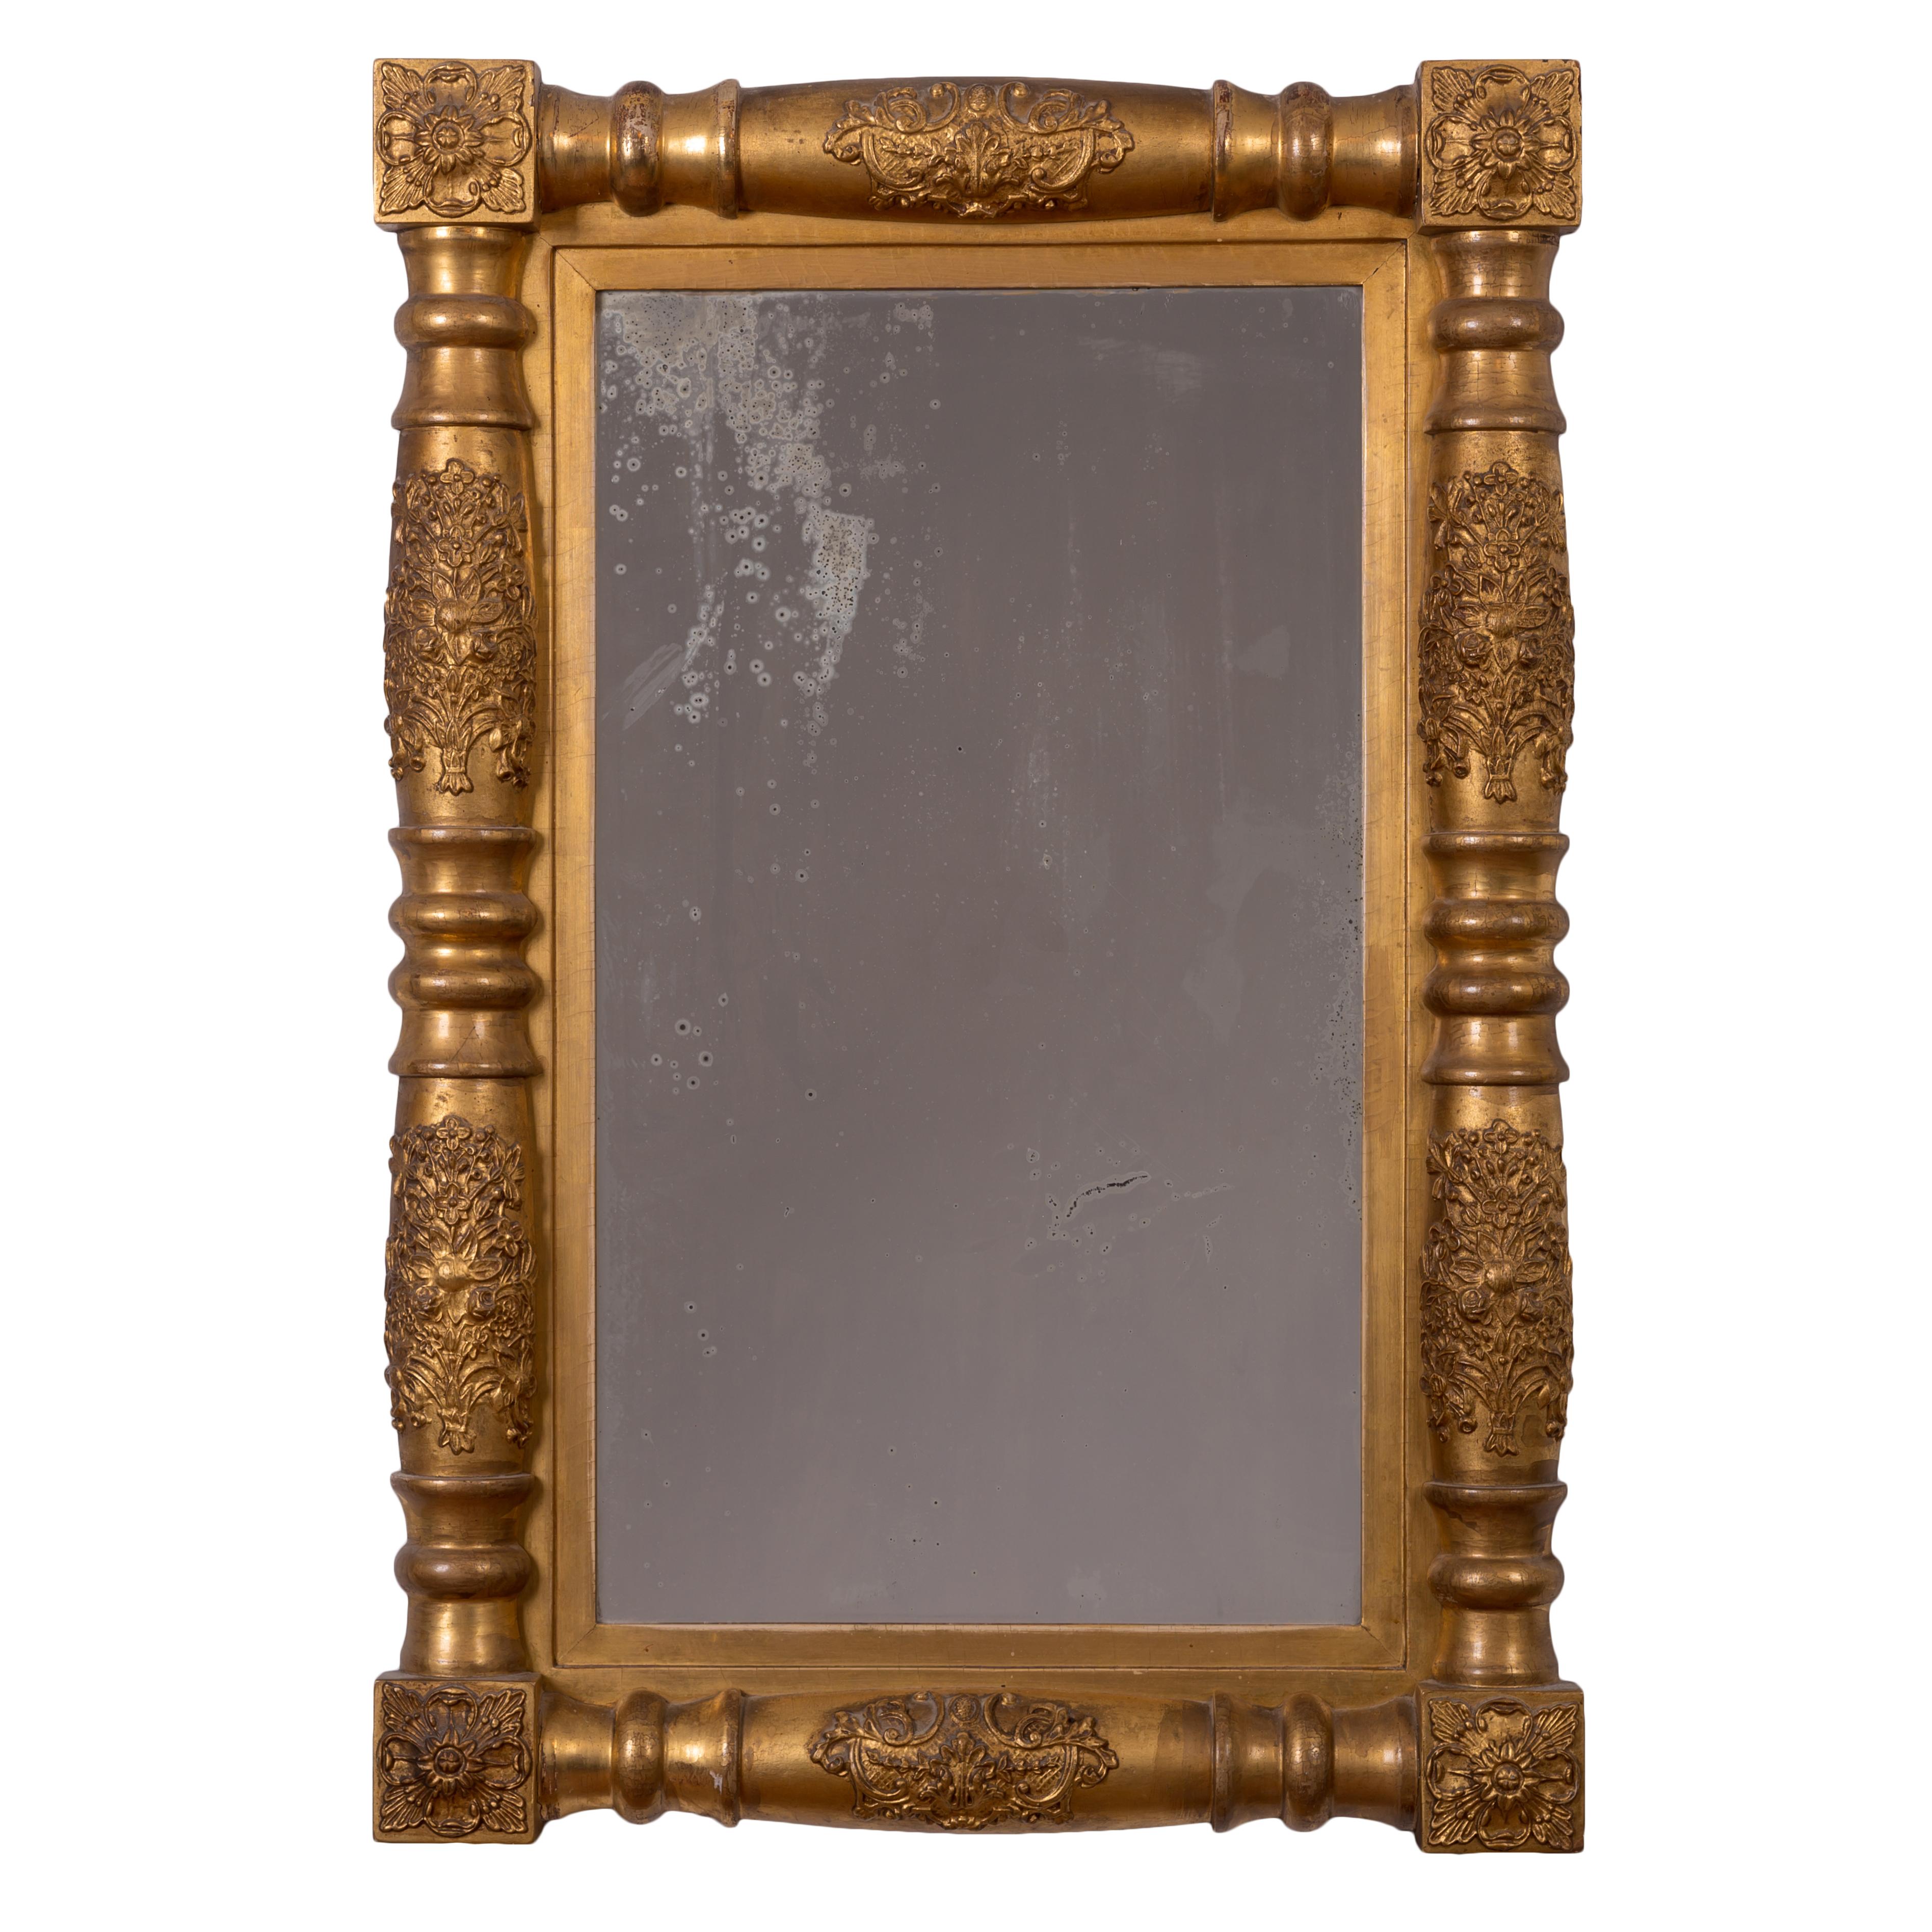 Ein Sheraton-Spiegel aus vergoldetem Holz, um 1830.
Antike Platte; Originalvergoldung mit einigen frühen Retuschen.

23 Zoll breit, 34 Zoll hoch und 3 Zoll tief